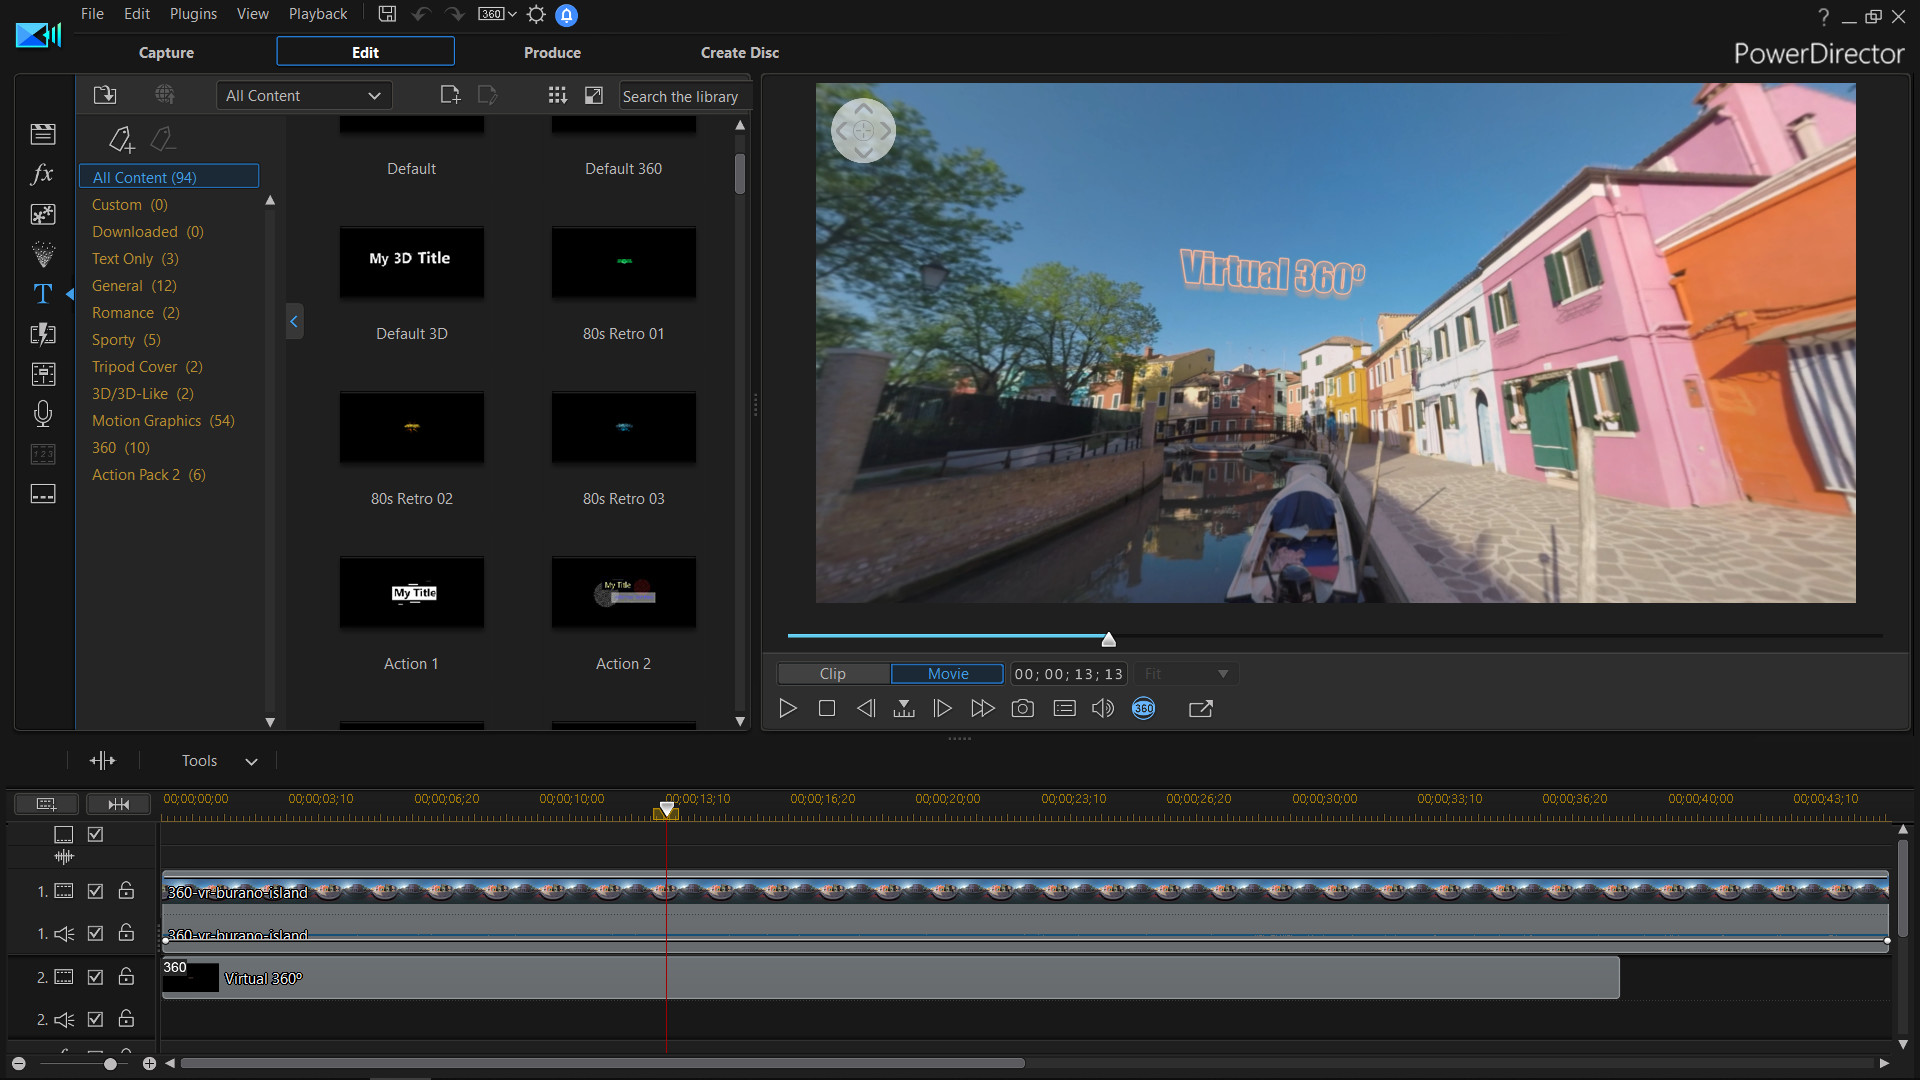 CyberLink PowerDirector 18 Ultimate - Video editing, Video editor, making videos screenshot